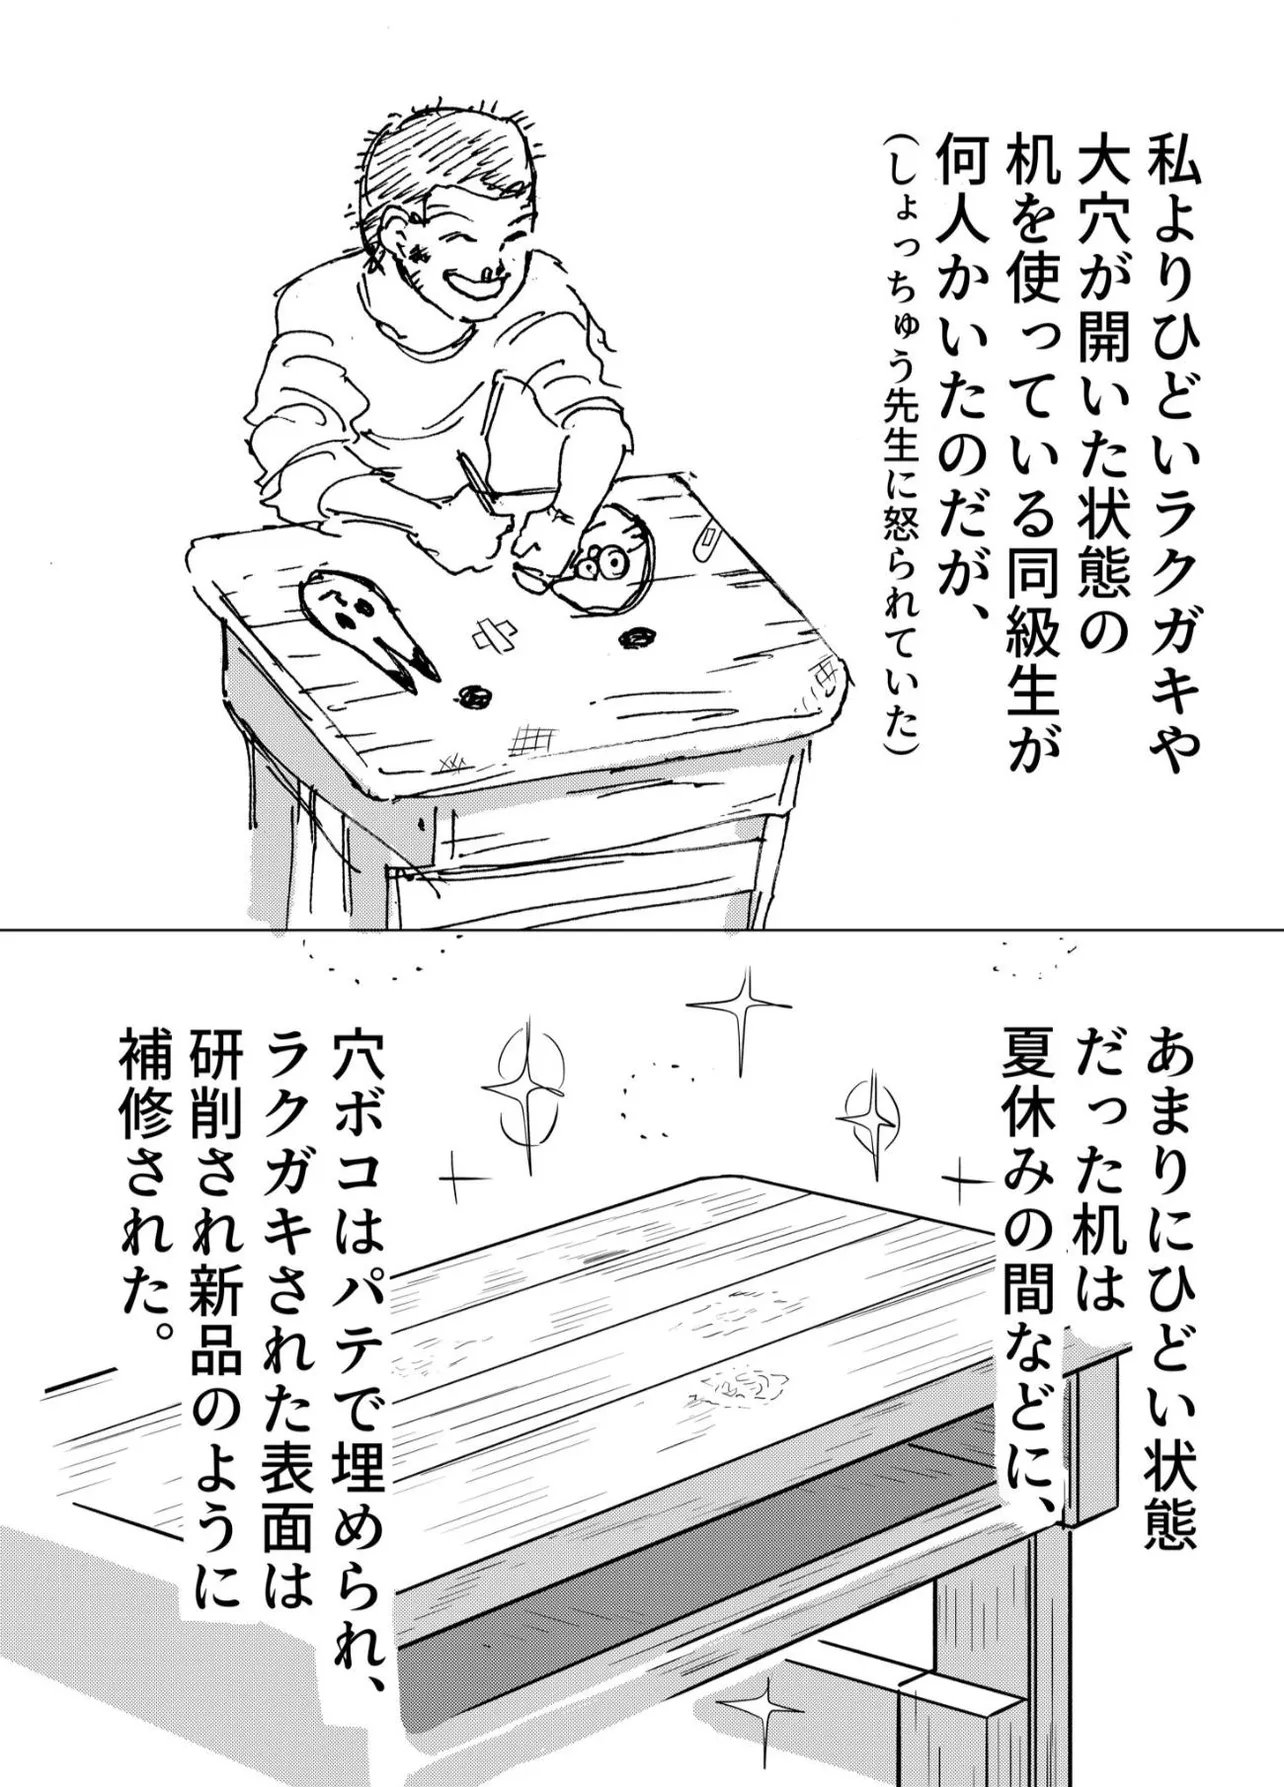 『小学校の机が変だった話』(4／7)